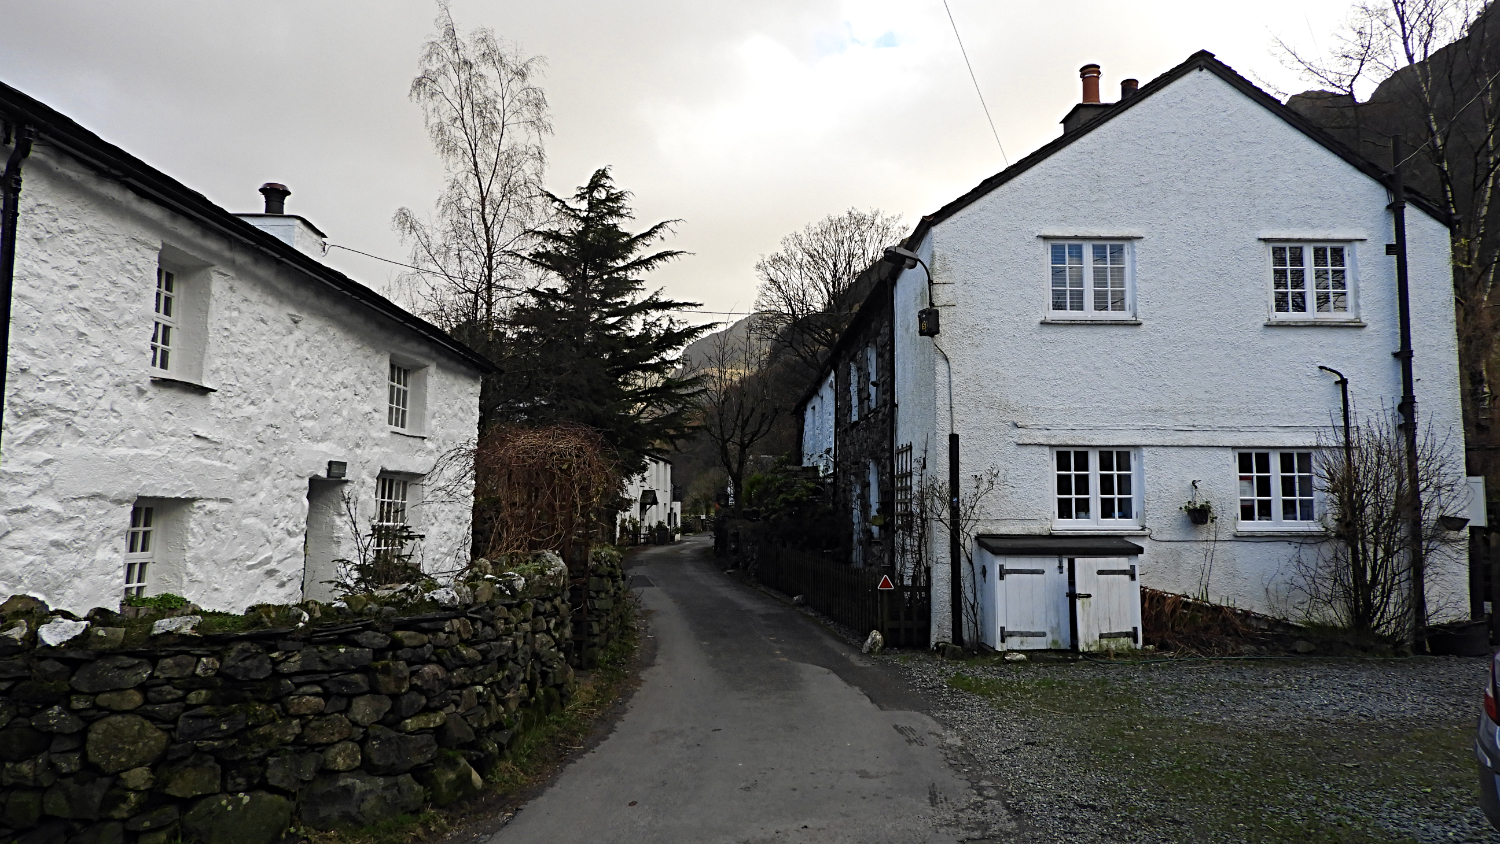 The village of Stonethwaite